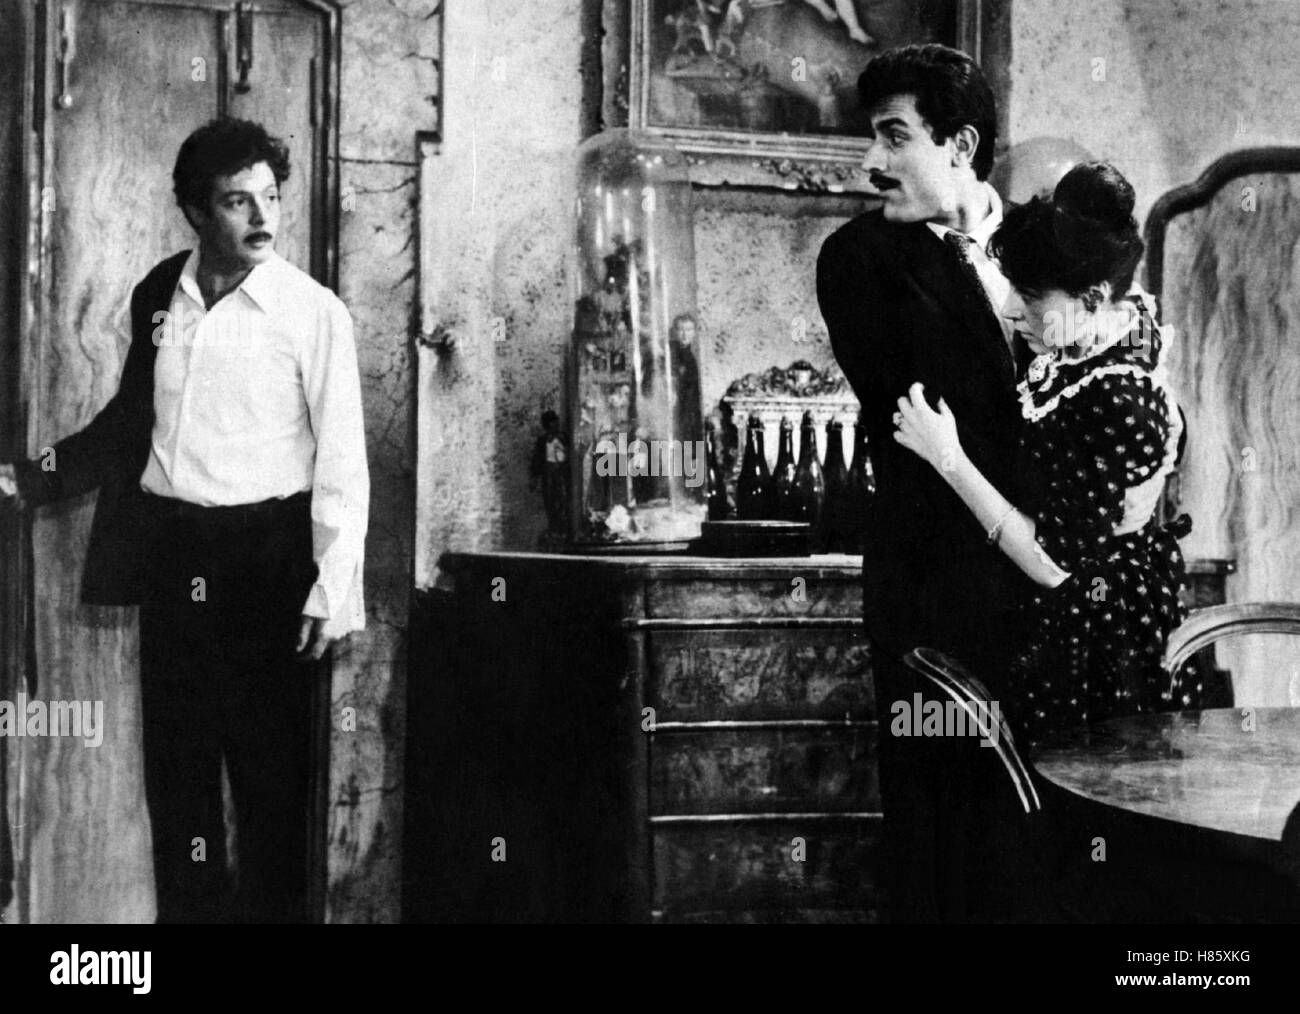 Scheidung auf italienisch, (DIVORZIO ALL' ITALIANA) IT 1961, Regie: Pietro Germi, MARCELLO MASTROIANNI, DANIELA ROCCA (re), Stichwort: Seitensprung, Erwischen, Ertappen Stock Photo